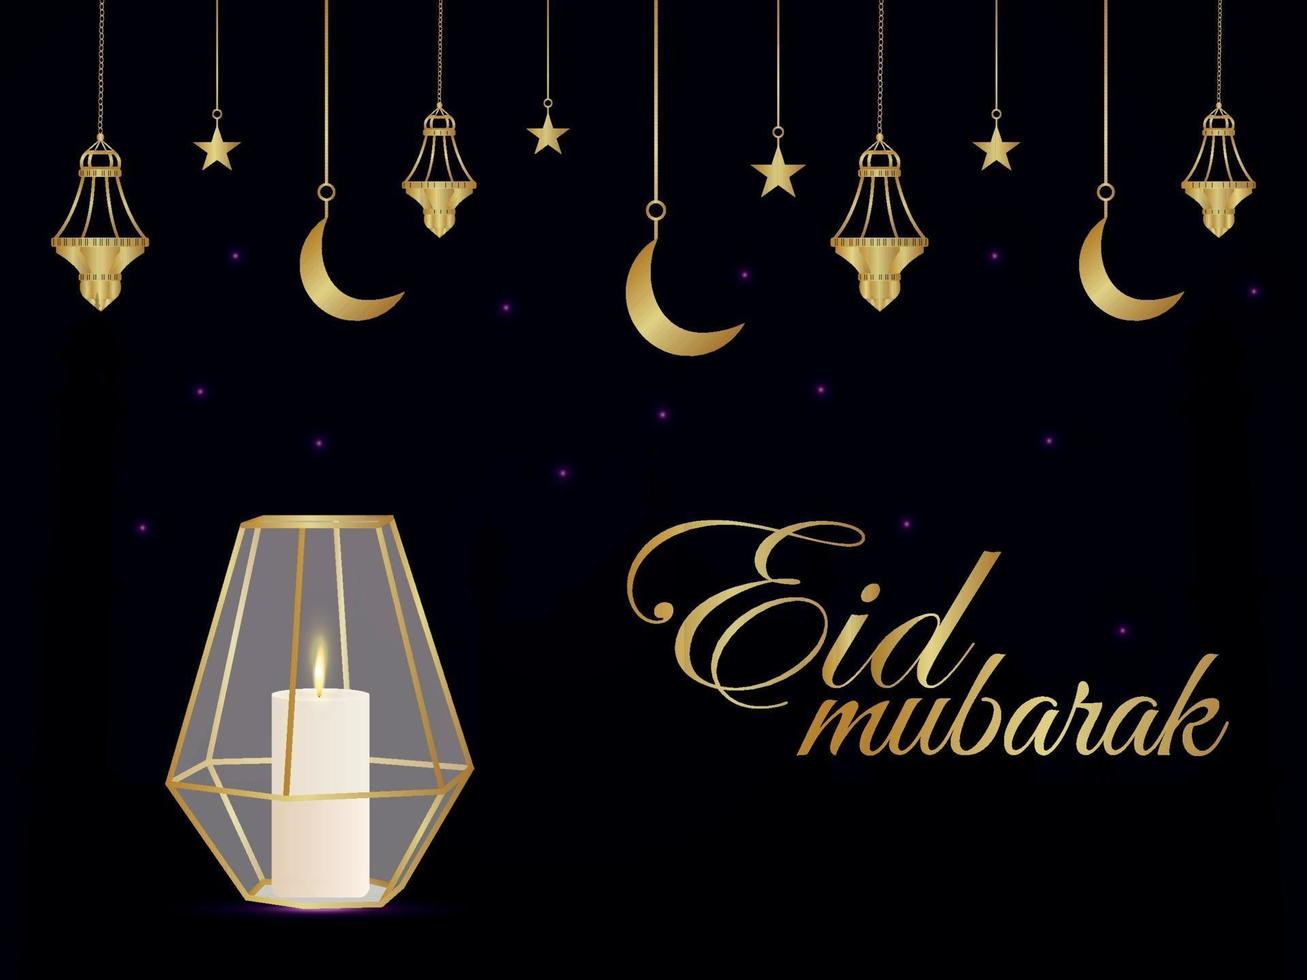 carte de voeux de célébration eid mubarak avec lanterne en cristal de vecteur or